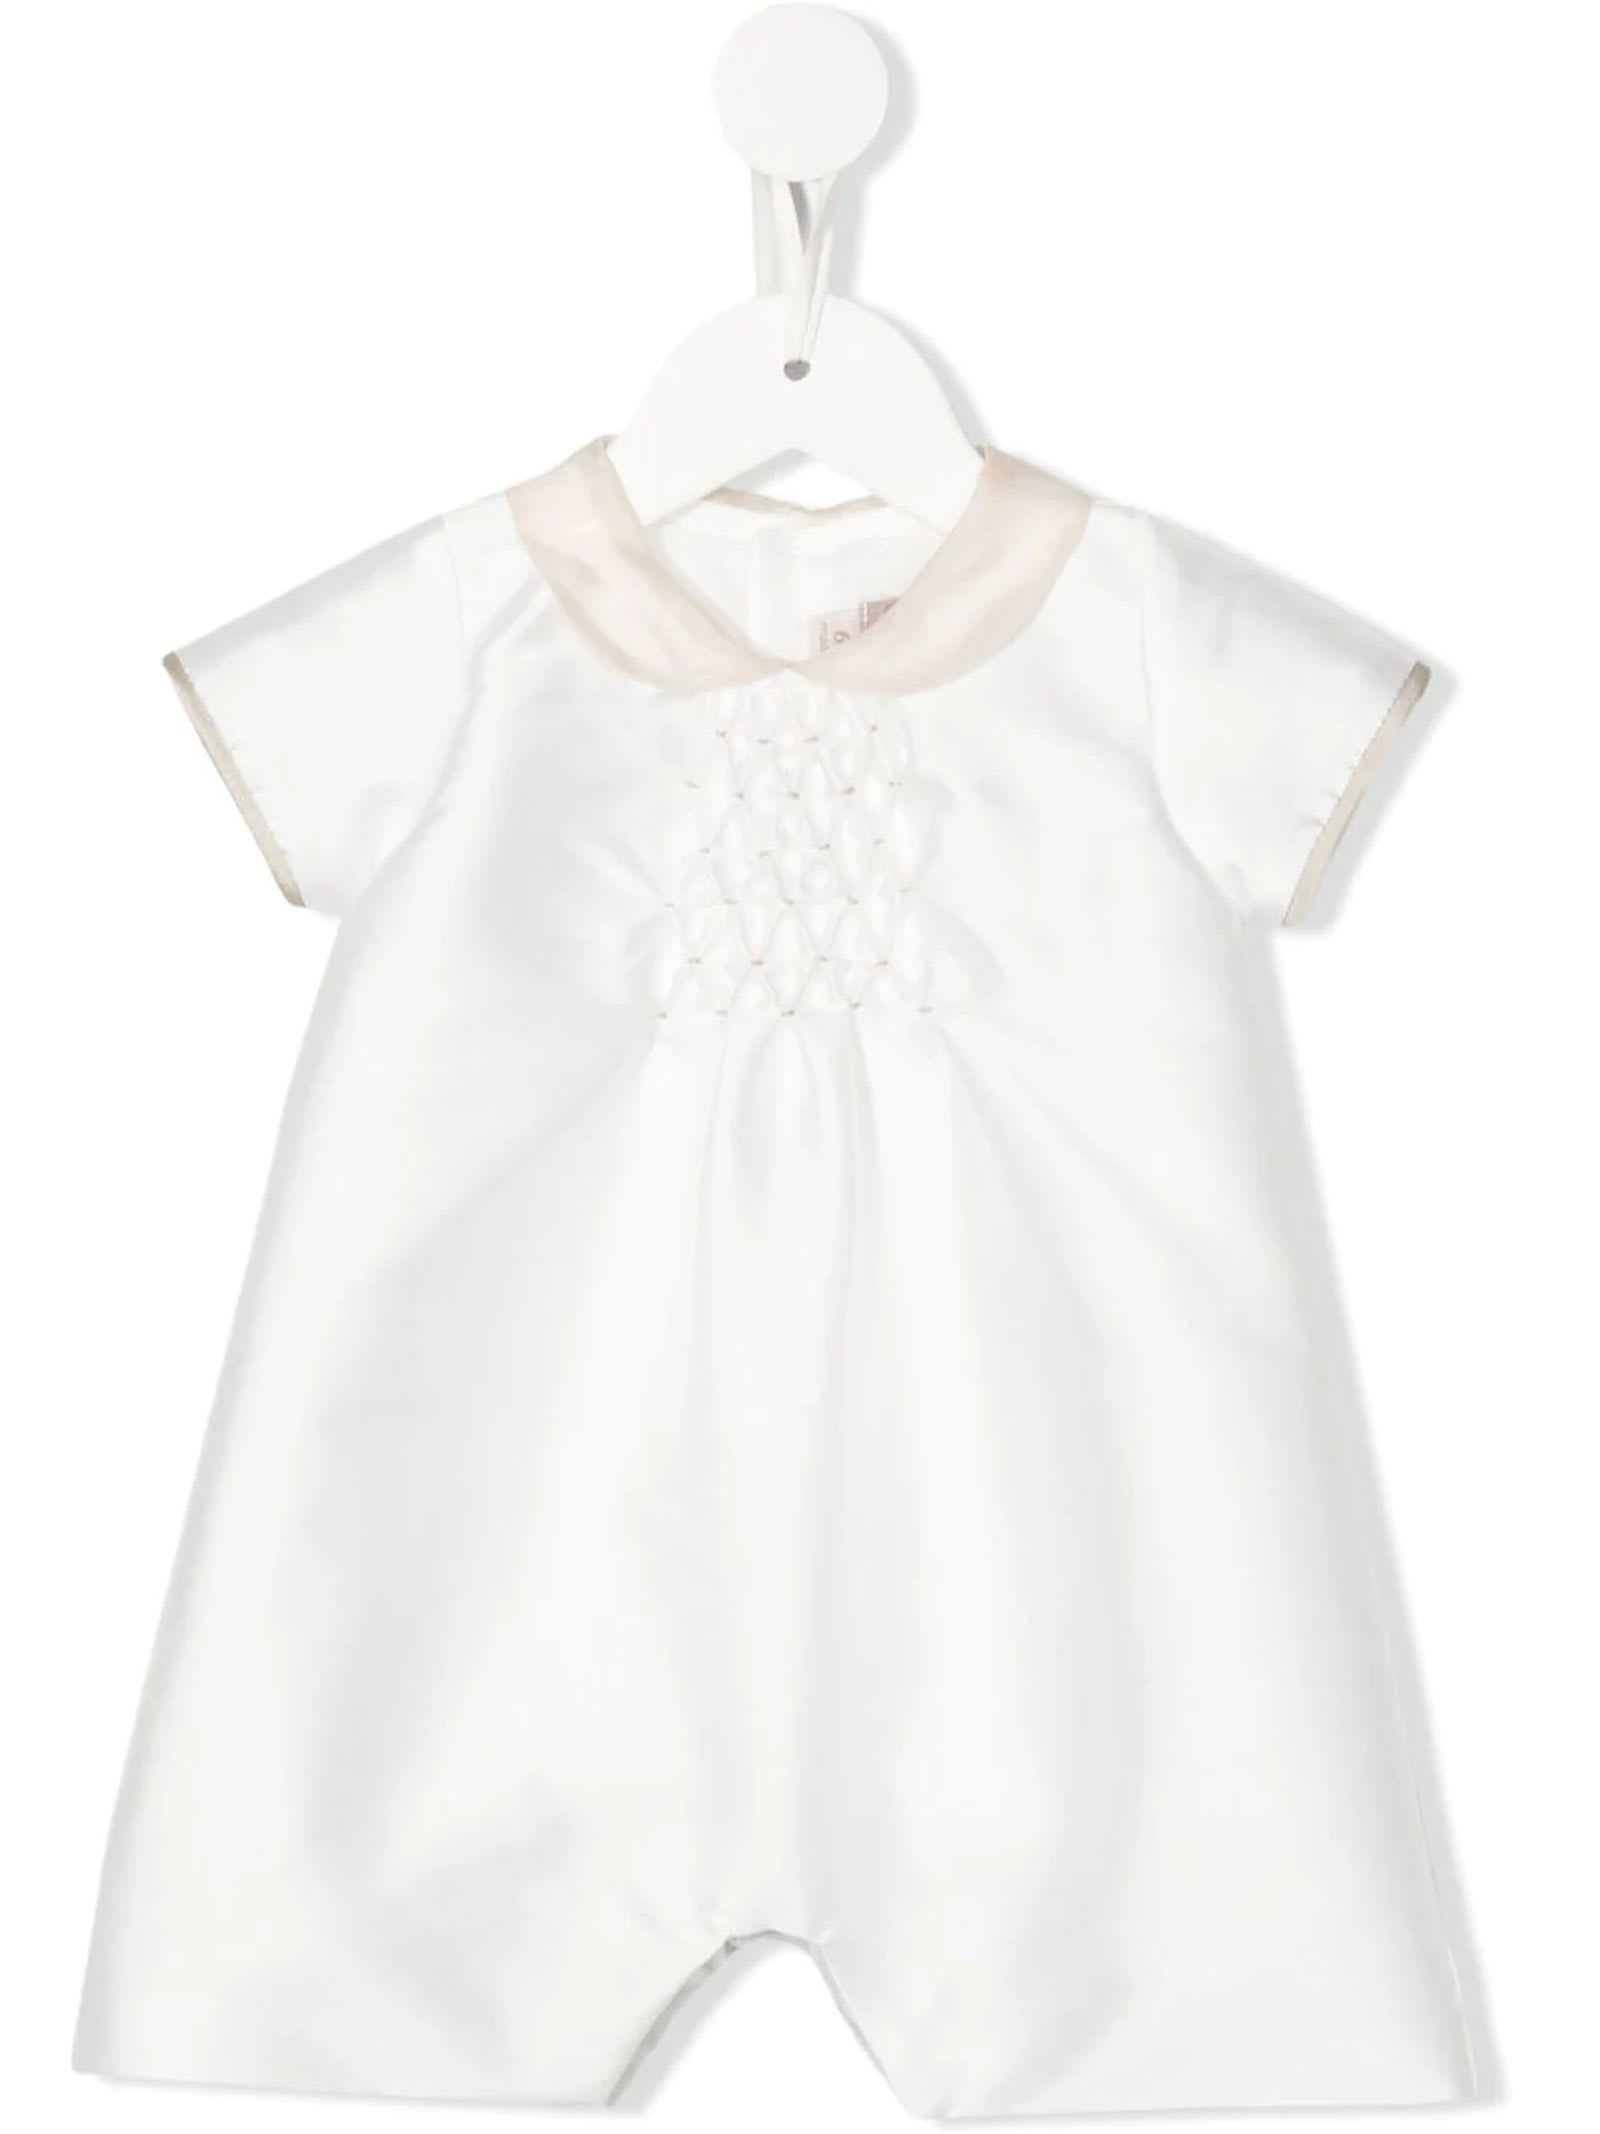 La Stupenderia Babies' White Cotton Dress In Cream